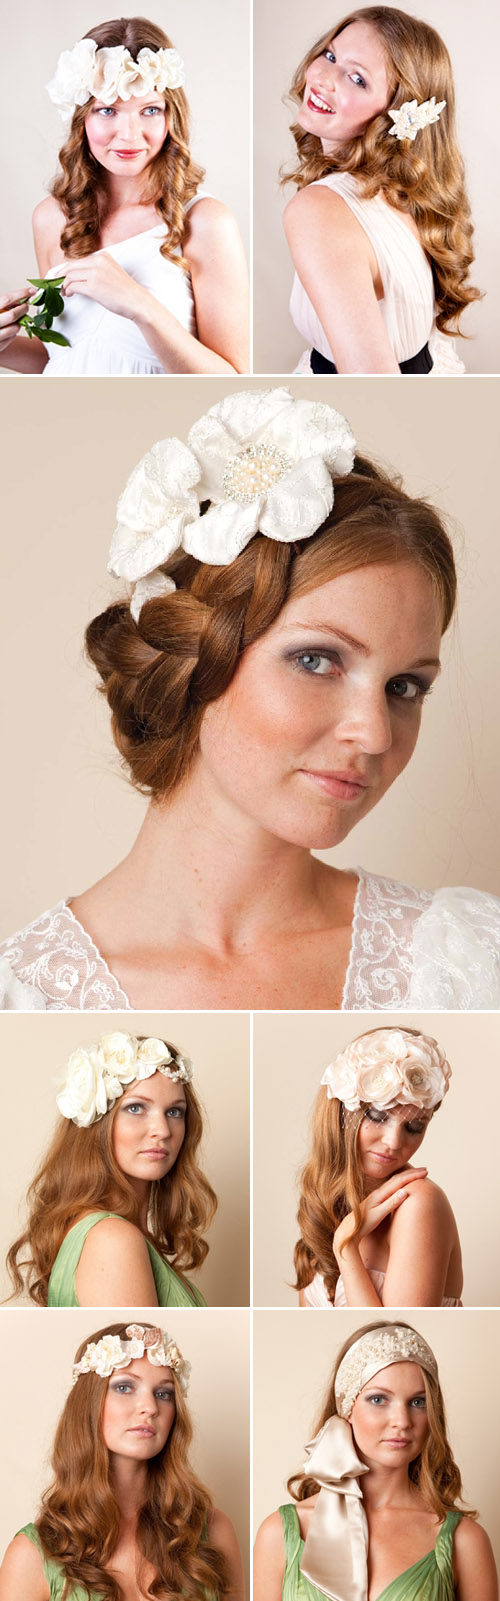 Jannie-Baltzer-wedding-bridal-hair-accessories-veils-3.jpg